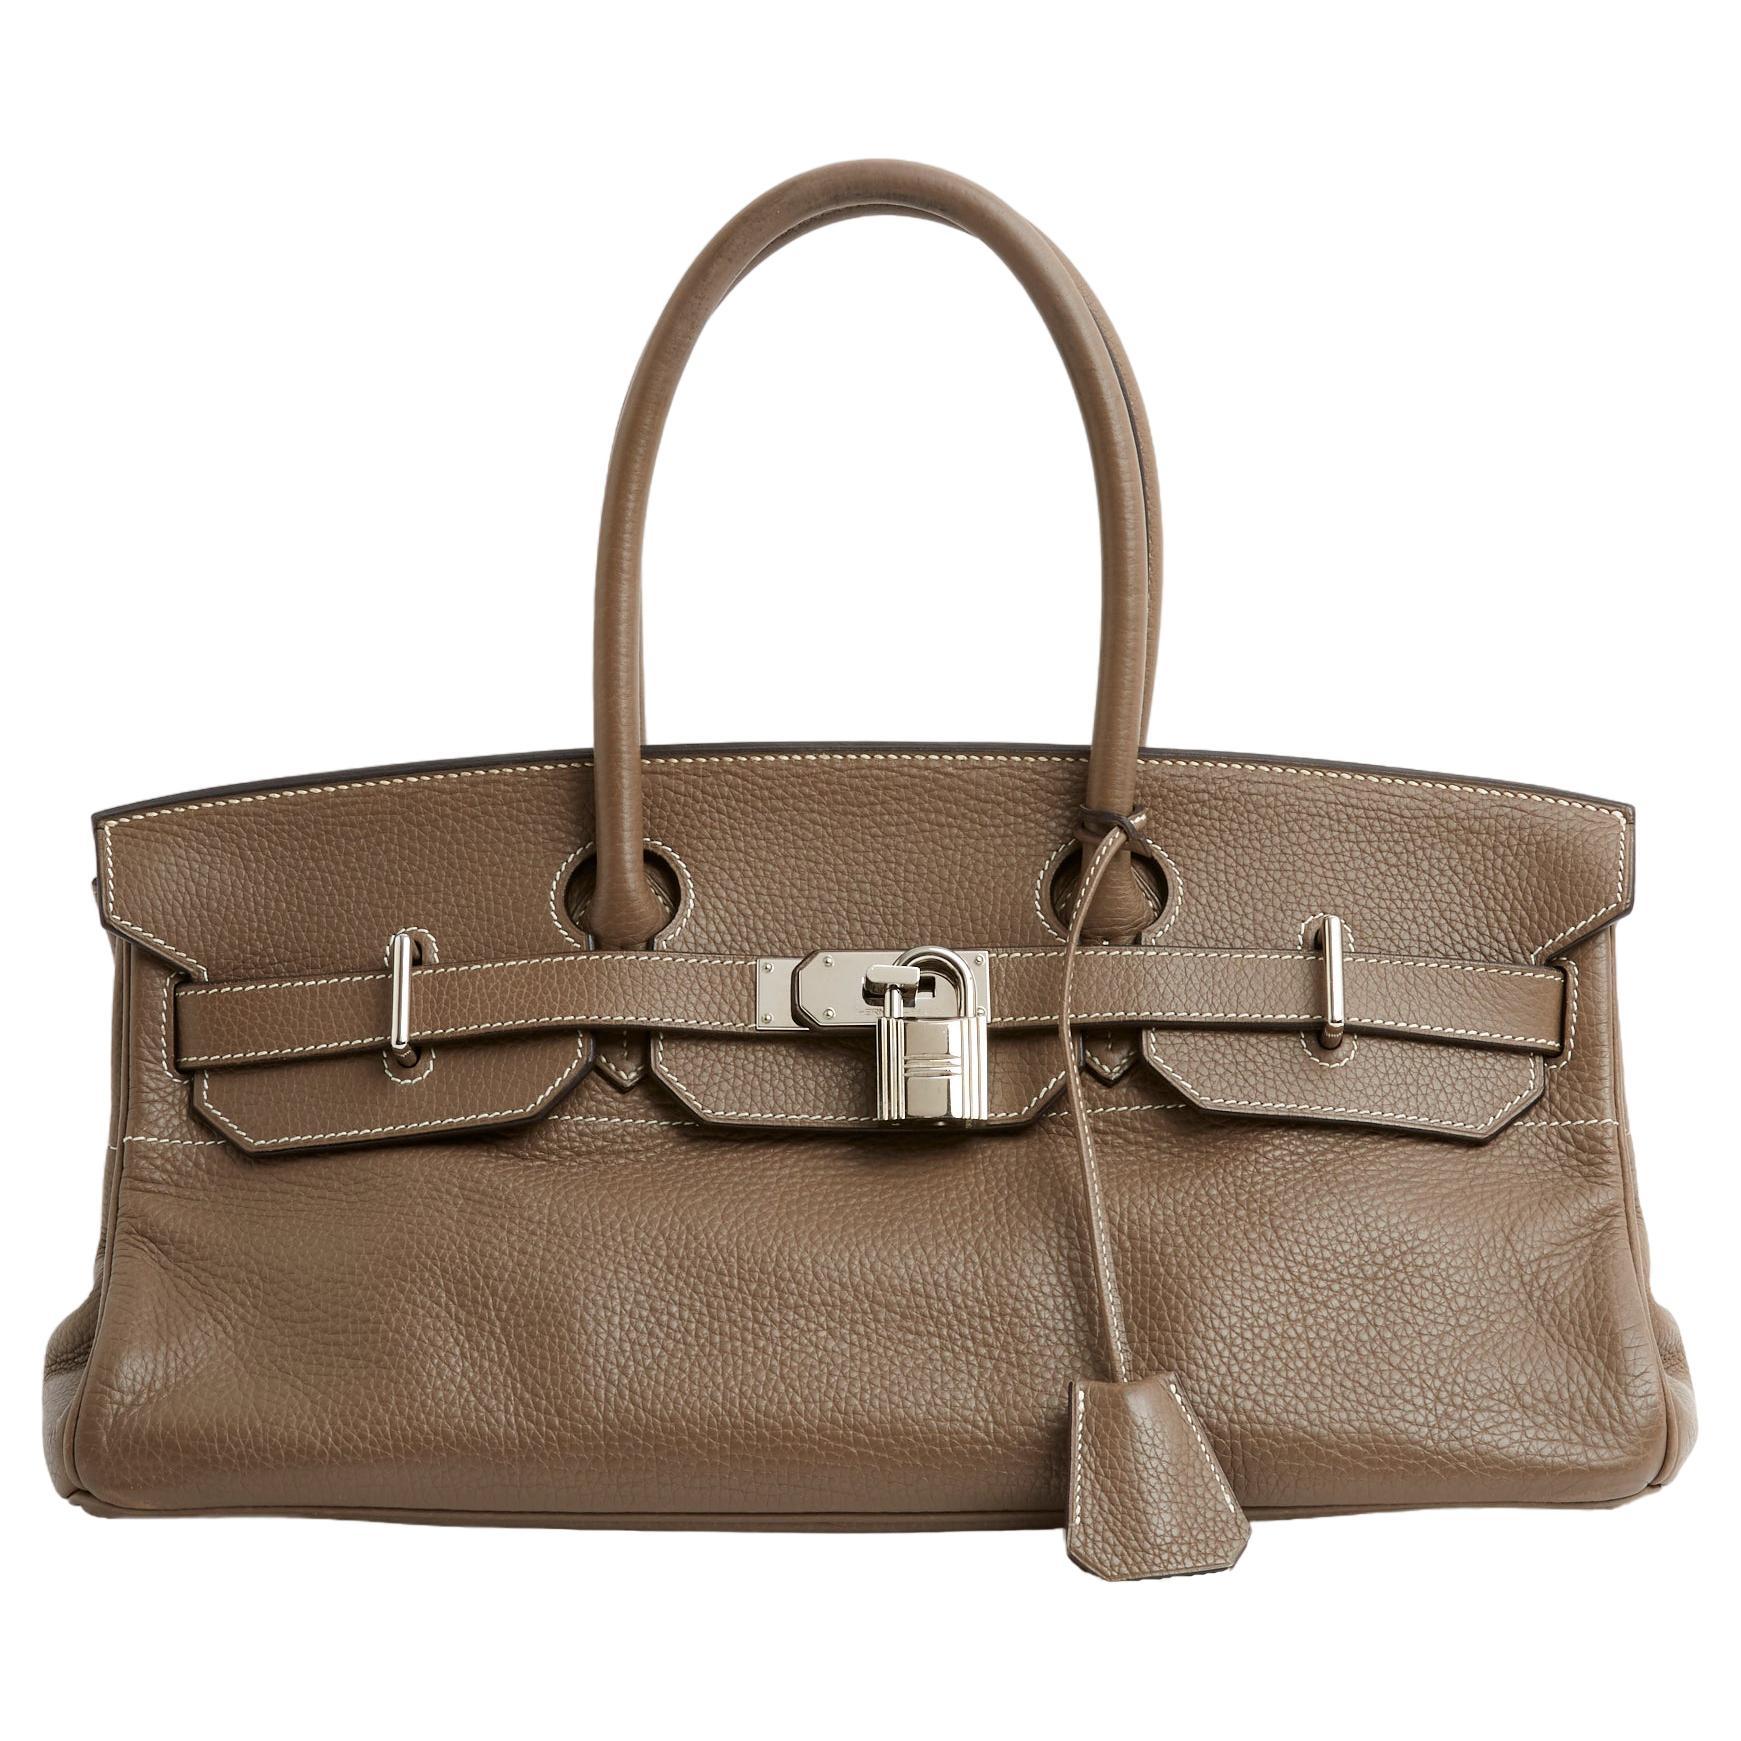 2006 JPG Hermès Birkin Shoulder Etoupe Leather Bag For Sale